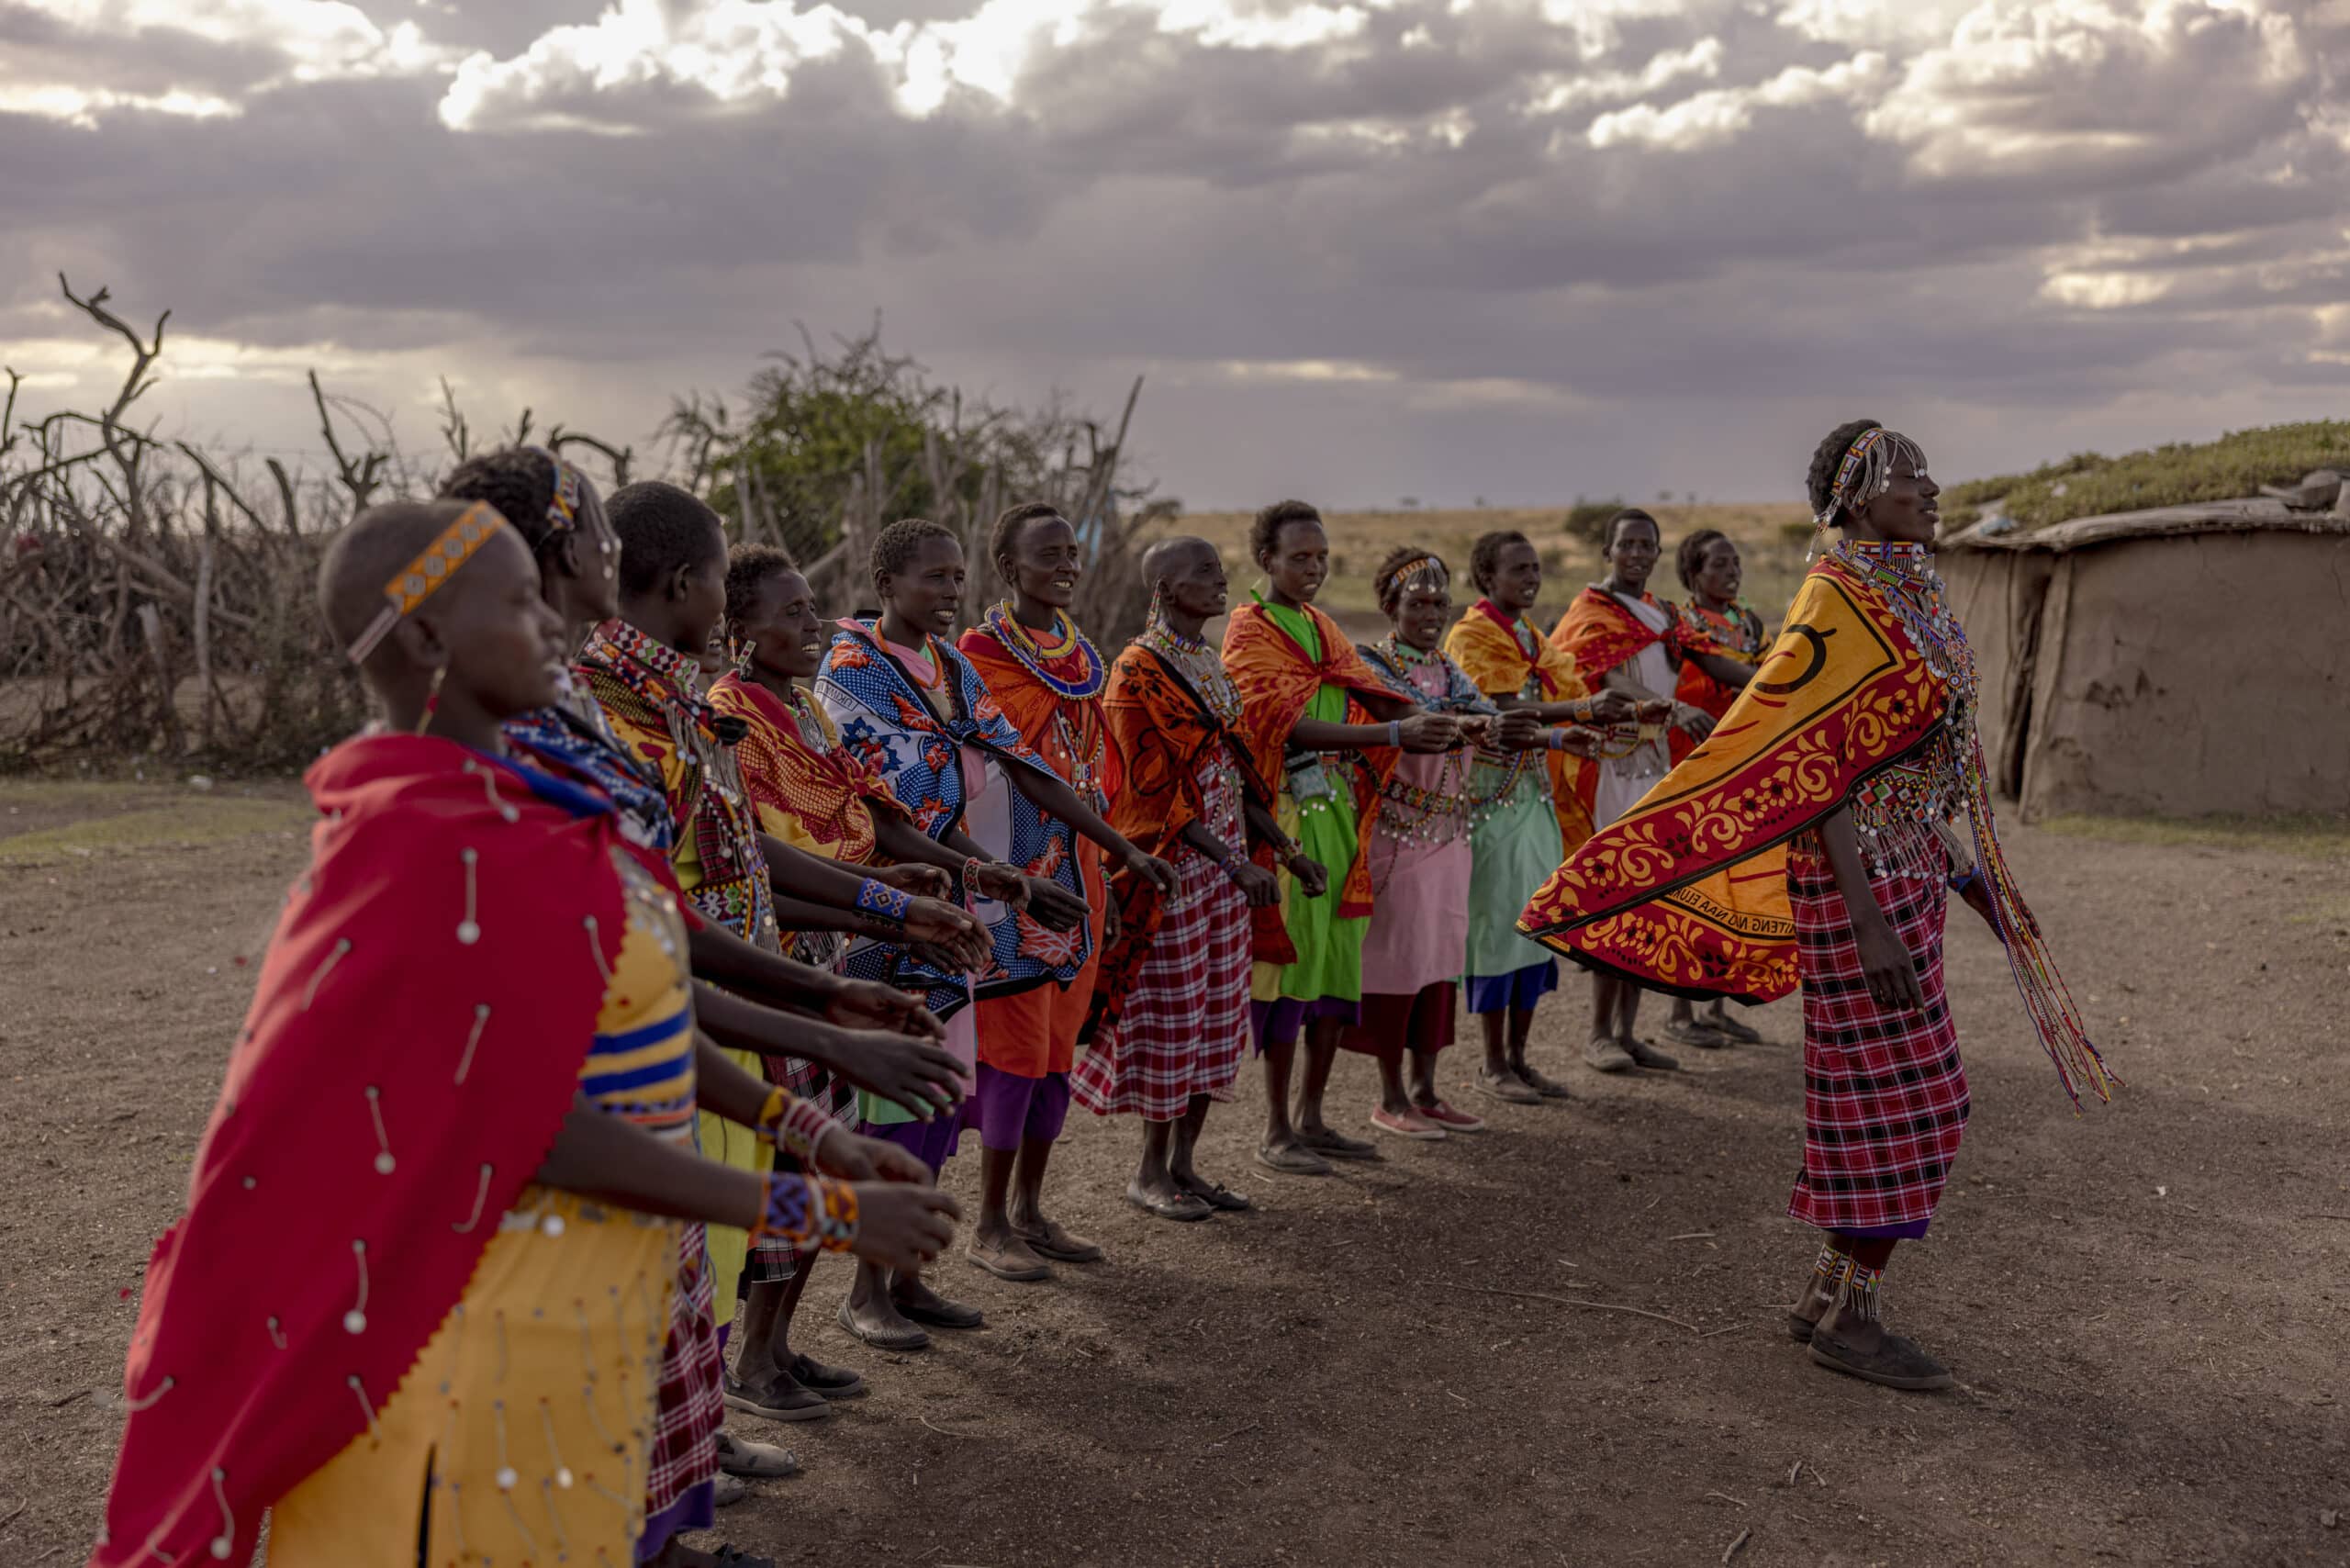 Eine Gruppe von Massai-Frauen in traditioneller, farbenfroher Kleidung führt in ländlicher Umgebung unter einem bewölkten Himmel einen kulturellen Tanz auf. © Fotografie Tomas Rodriguez